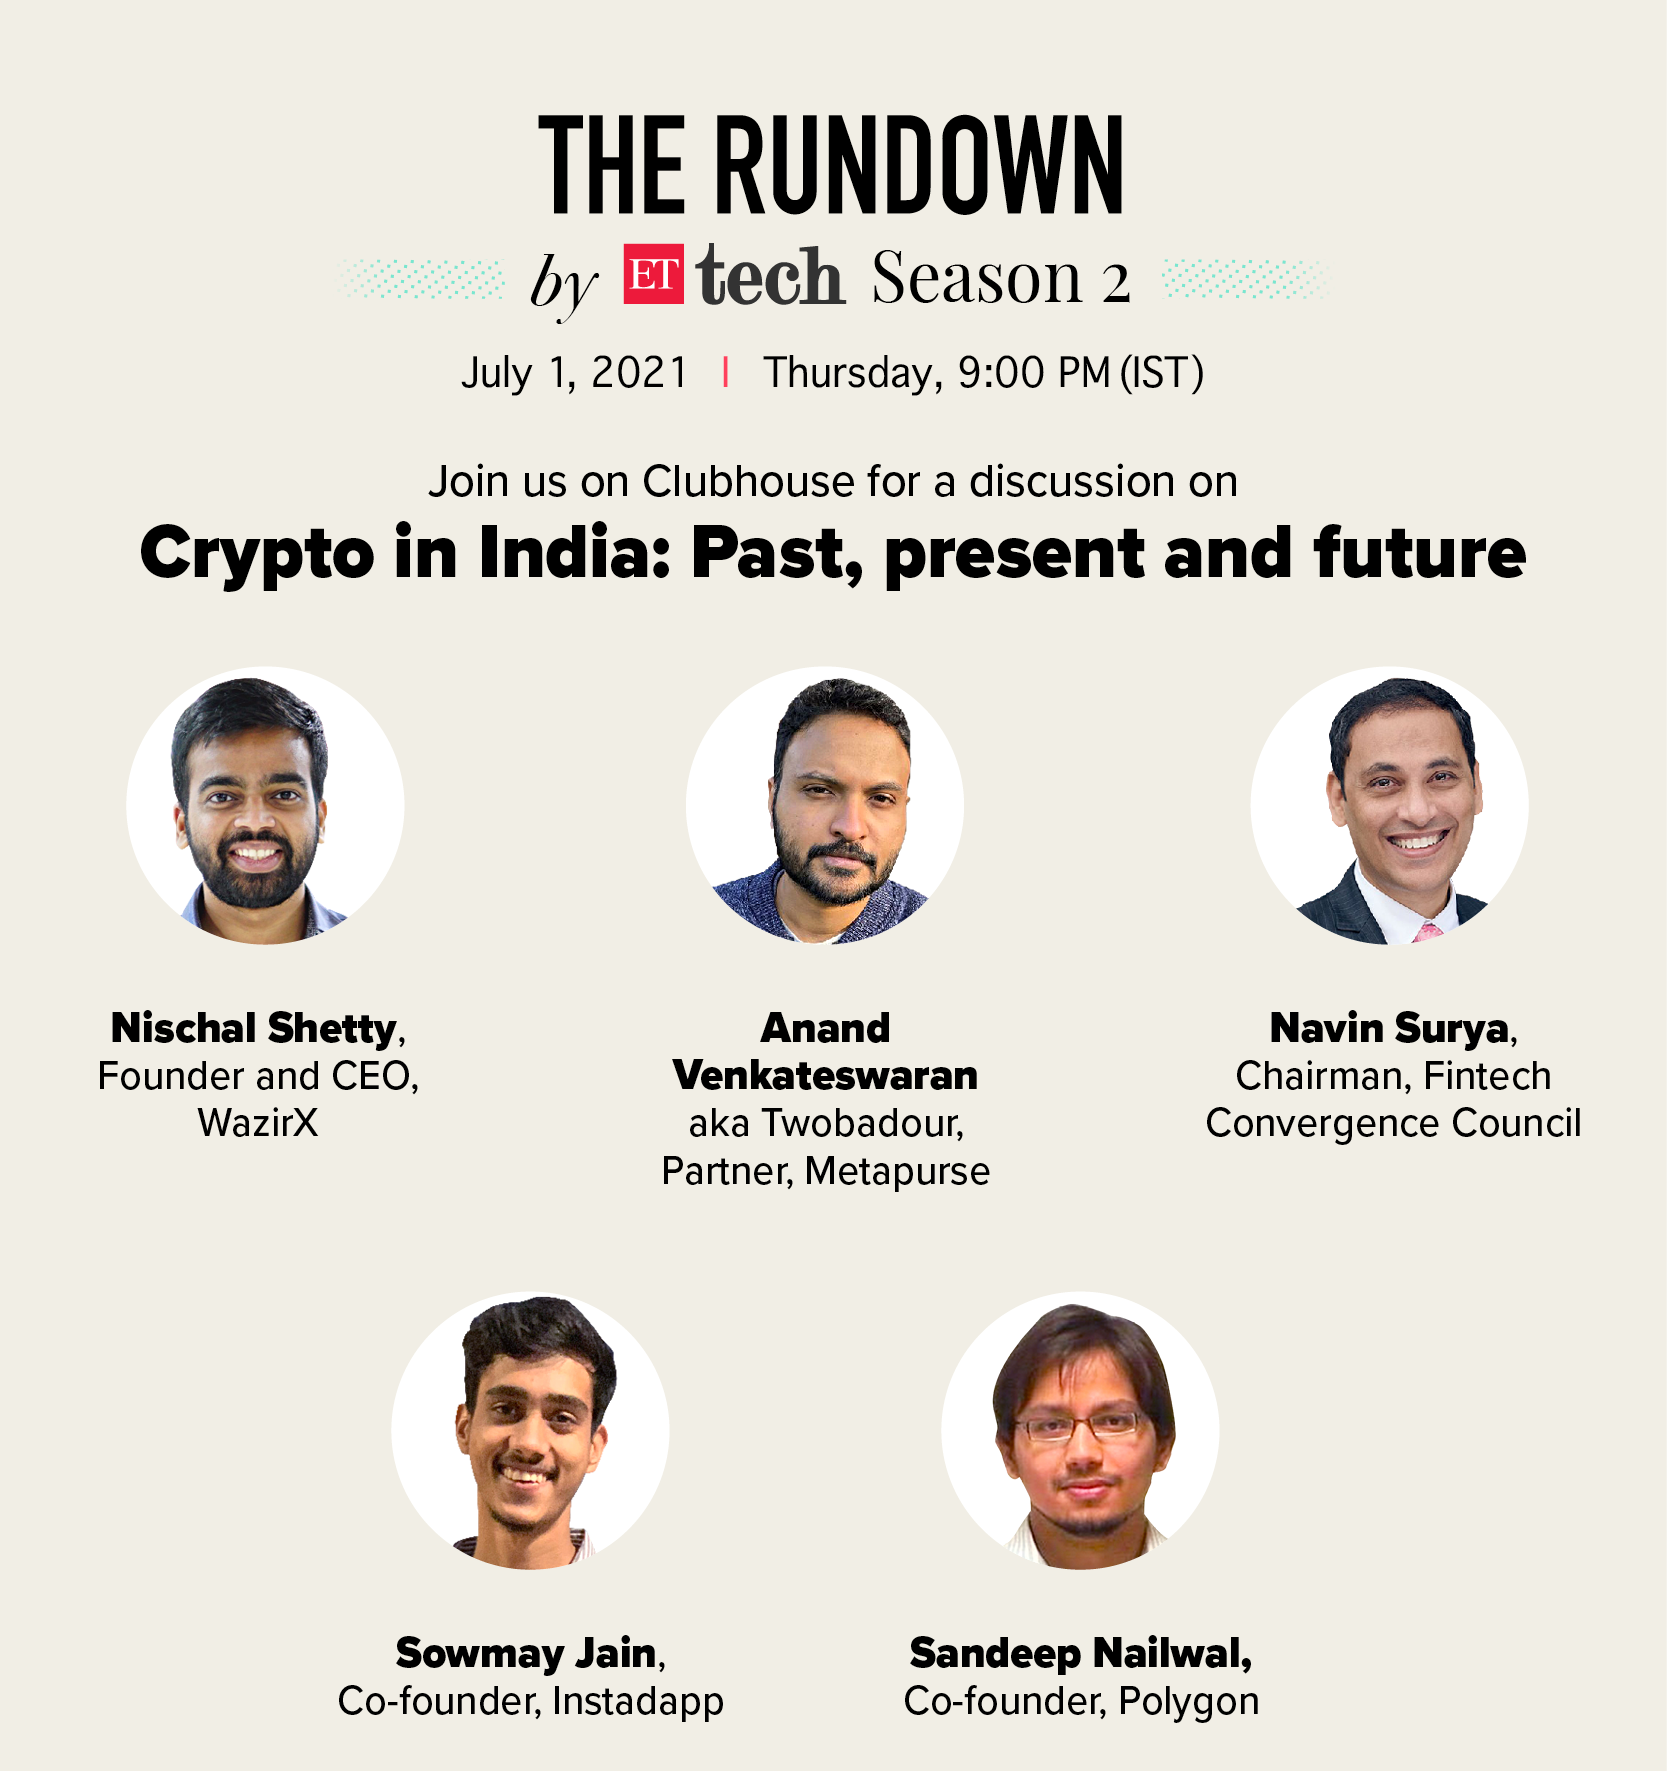 The Rundown by ETtech